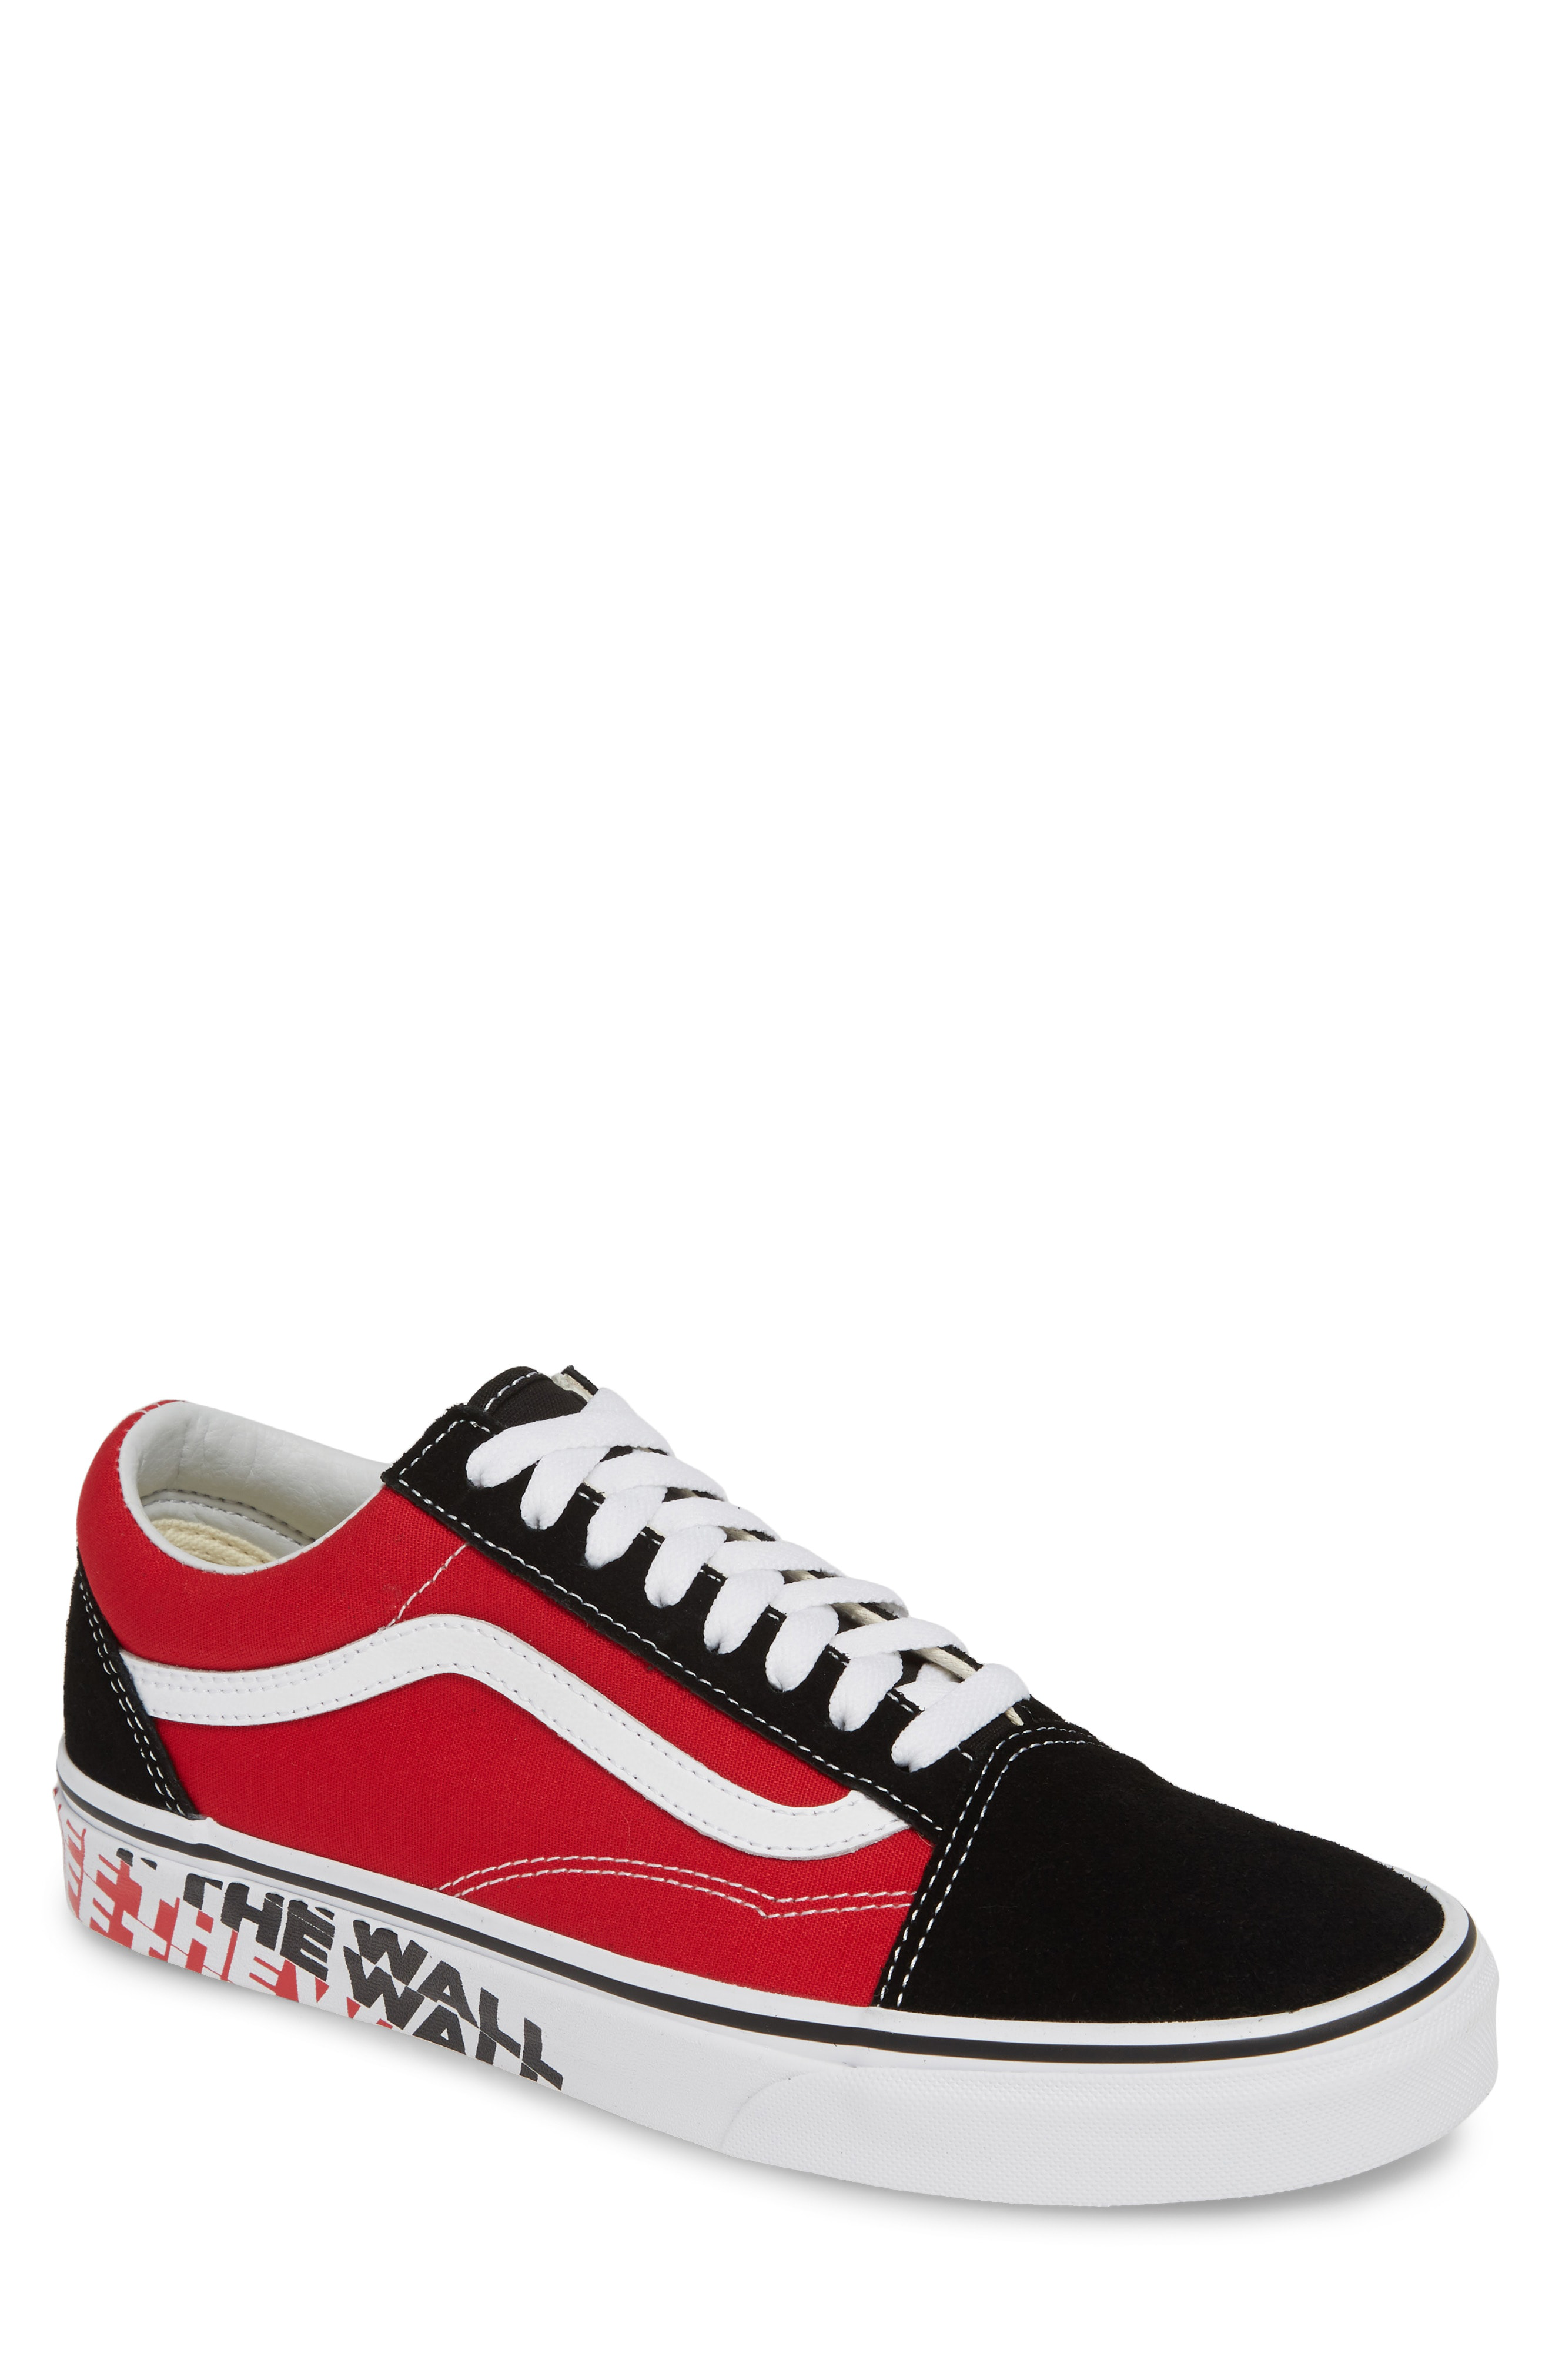 Vans Old Skool Sneaker In Black/ Racing Red | ModeSens